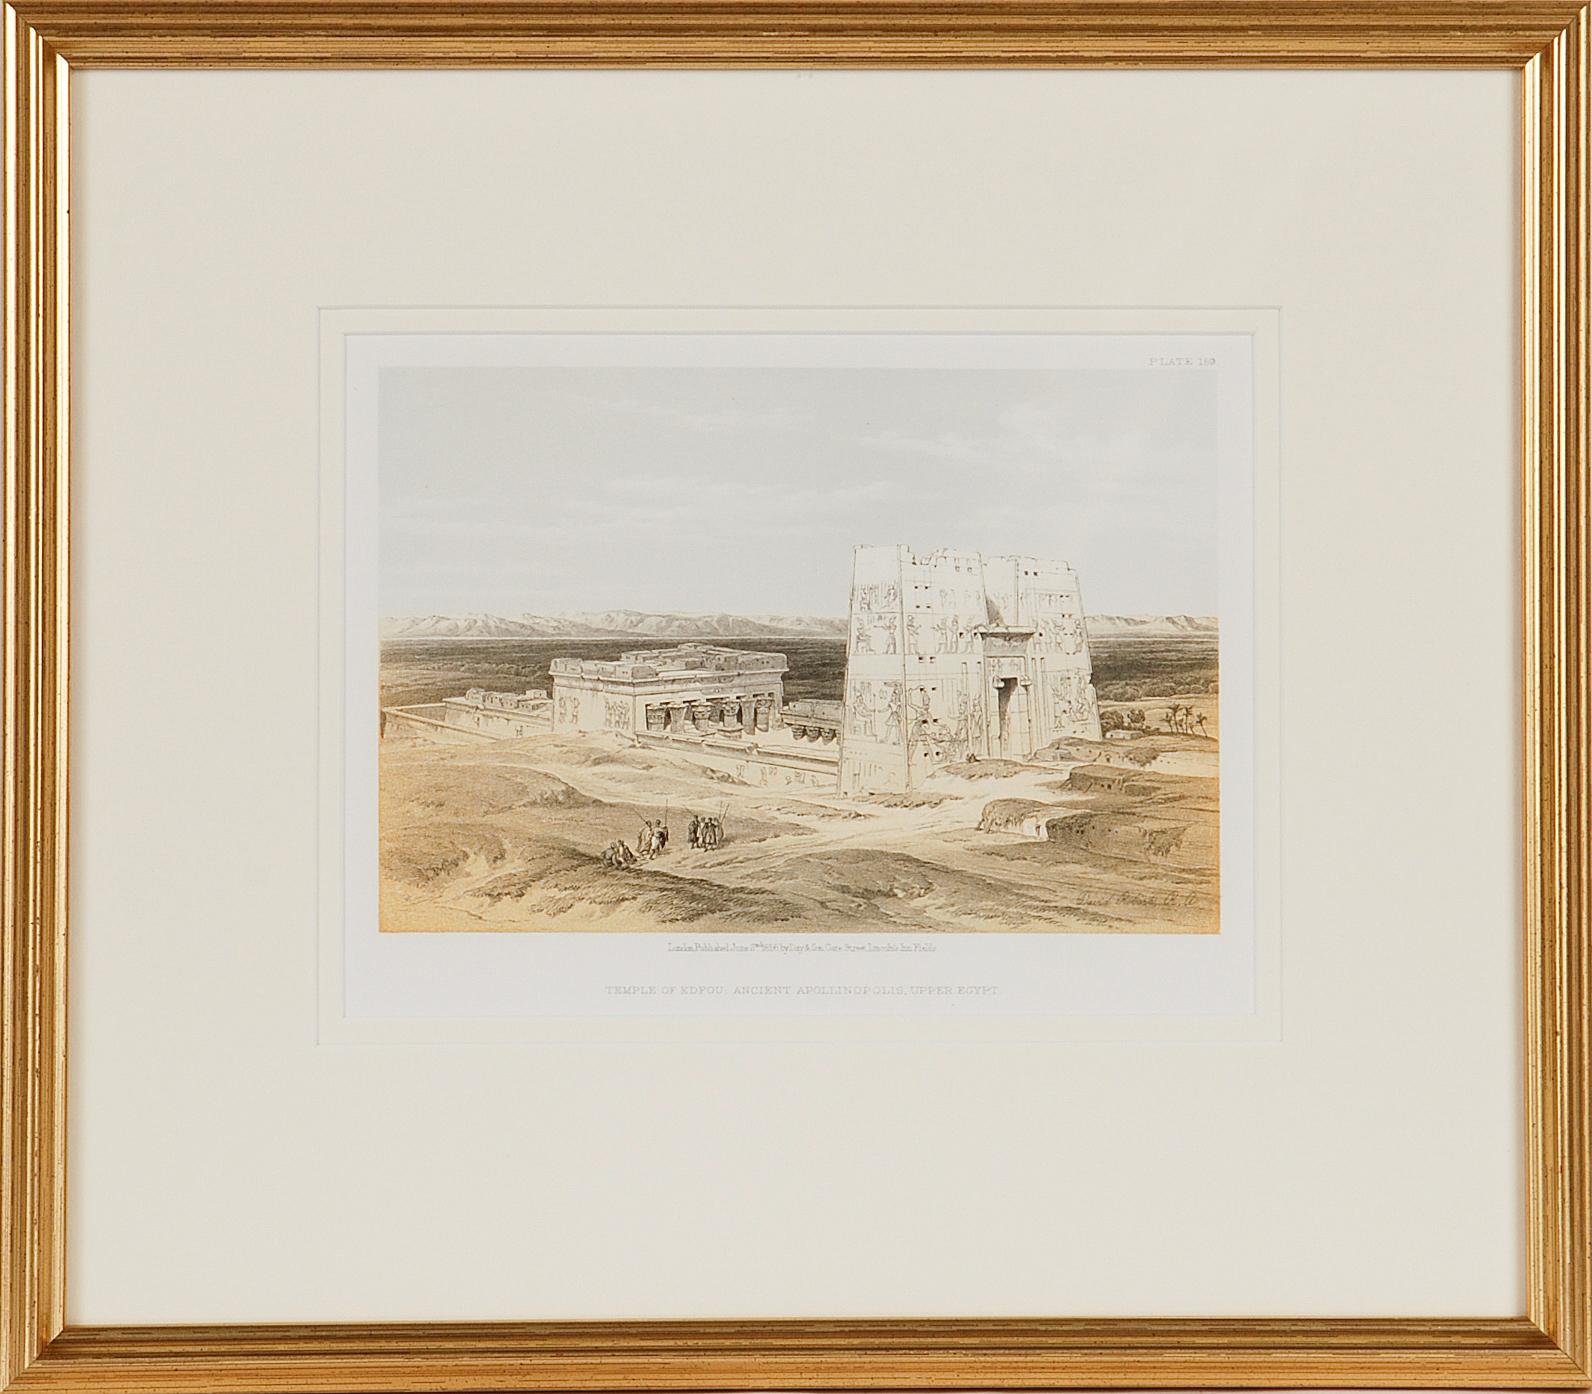 Dies ist eine Original-Duotone-Lithographie aus dem 19. Jahrhundert mit dem Titel "Temple of Edfou, Ancient Apollinopolis" von David Roberts, aus seinem Ägypten, Das Heilige Land und Nubien Bände der Quarto-Ausgabe, veröffentlicht in London von Day